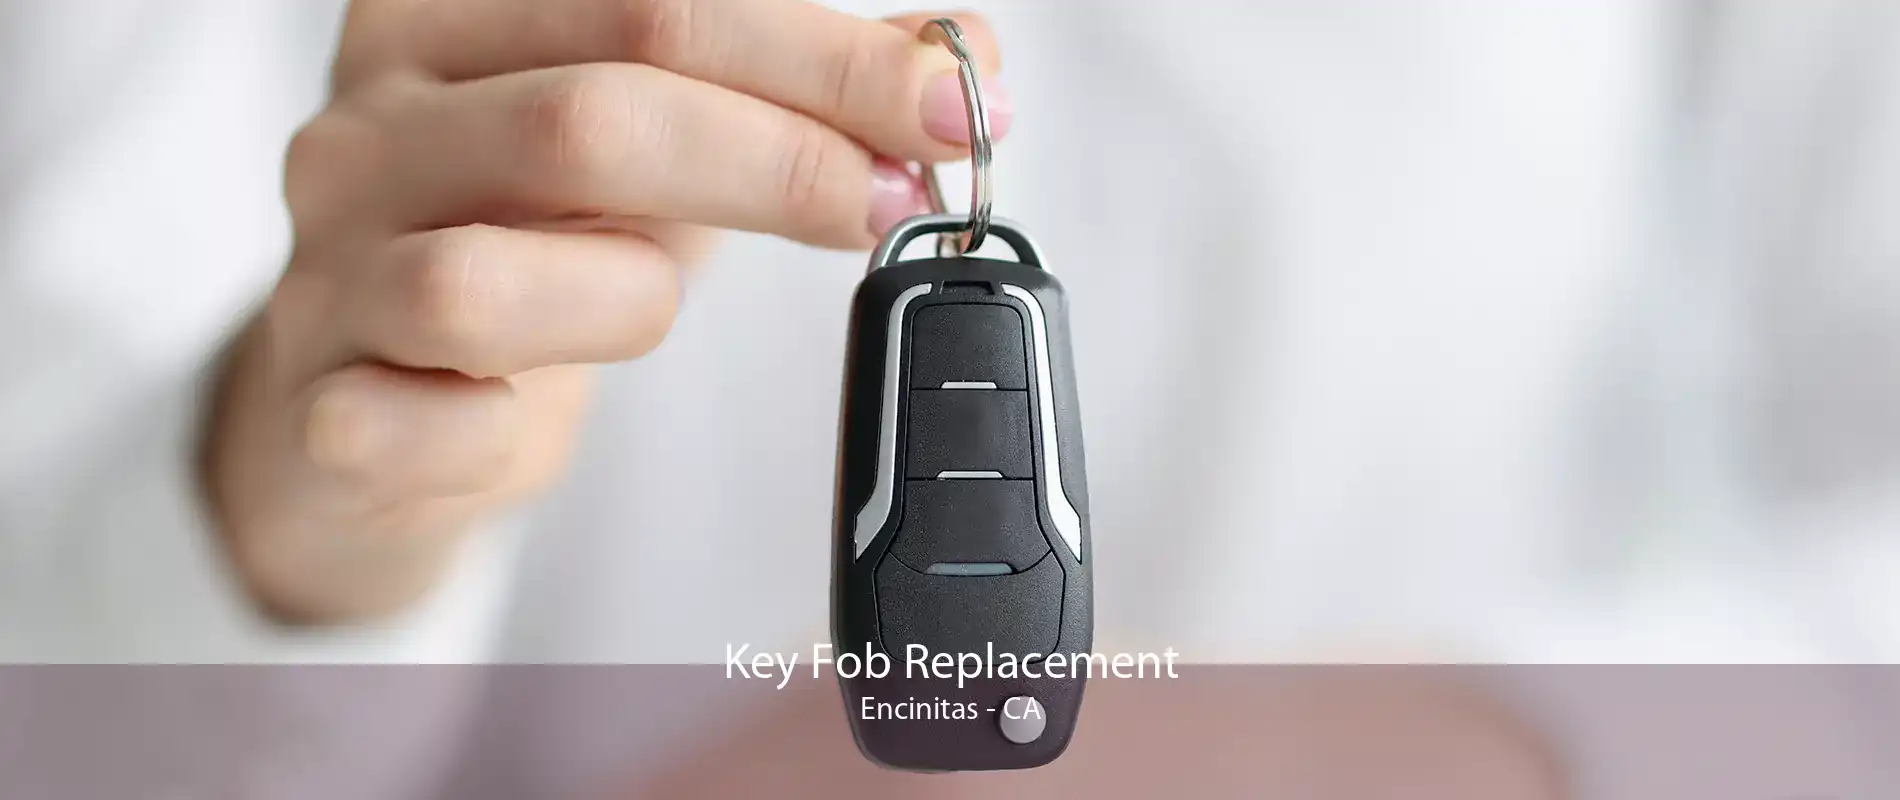 Key Fob Replacement Encinitas - CA